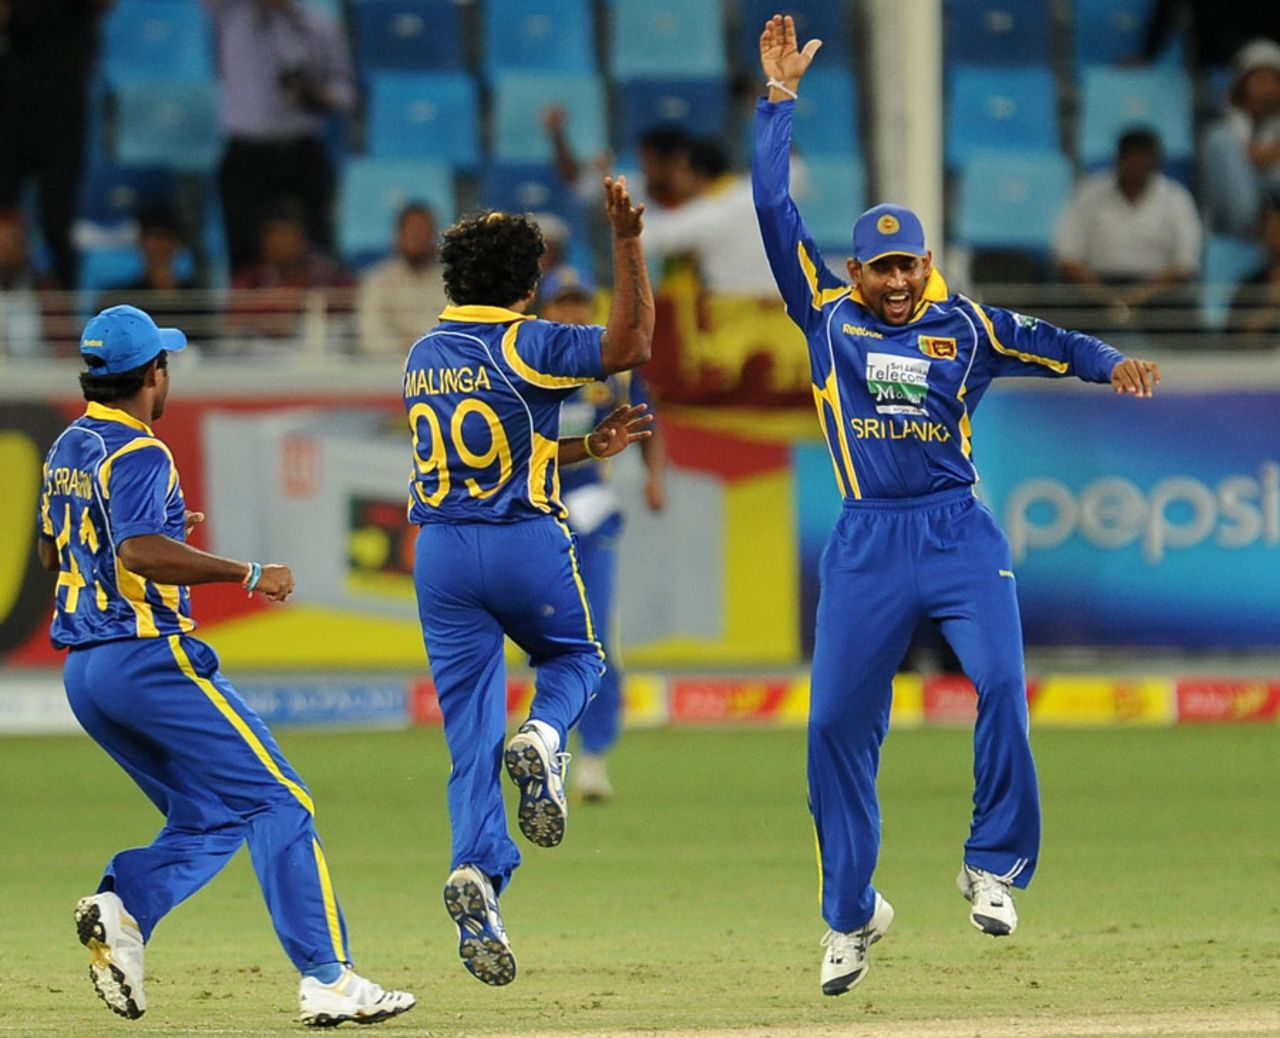 Sri Lanka are ecstatic after removing Younis Khan, Pakistan v Sri Lanka, 2nd ODI, Dubai, November 14, 2011 